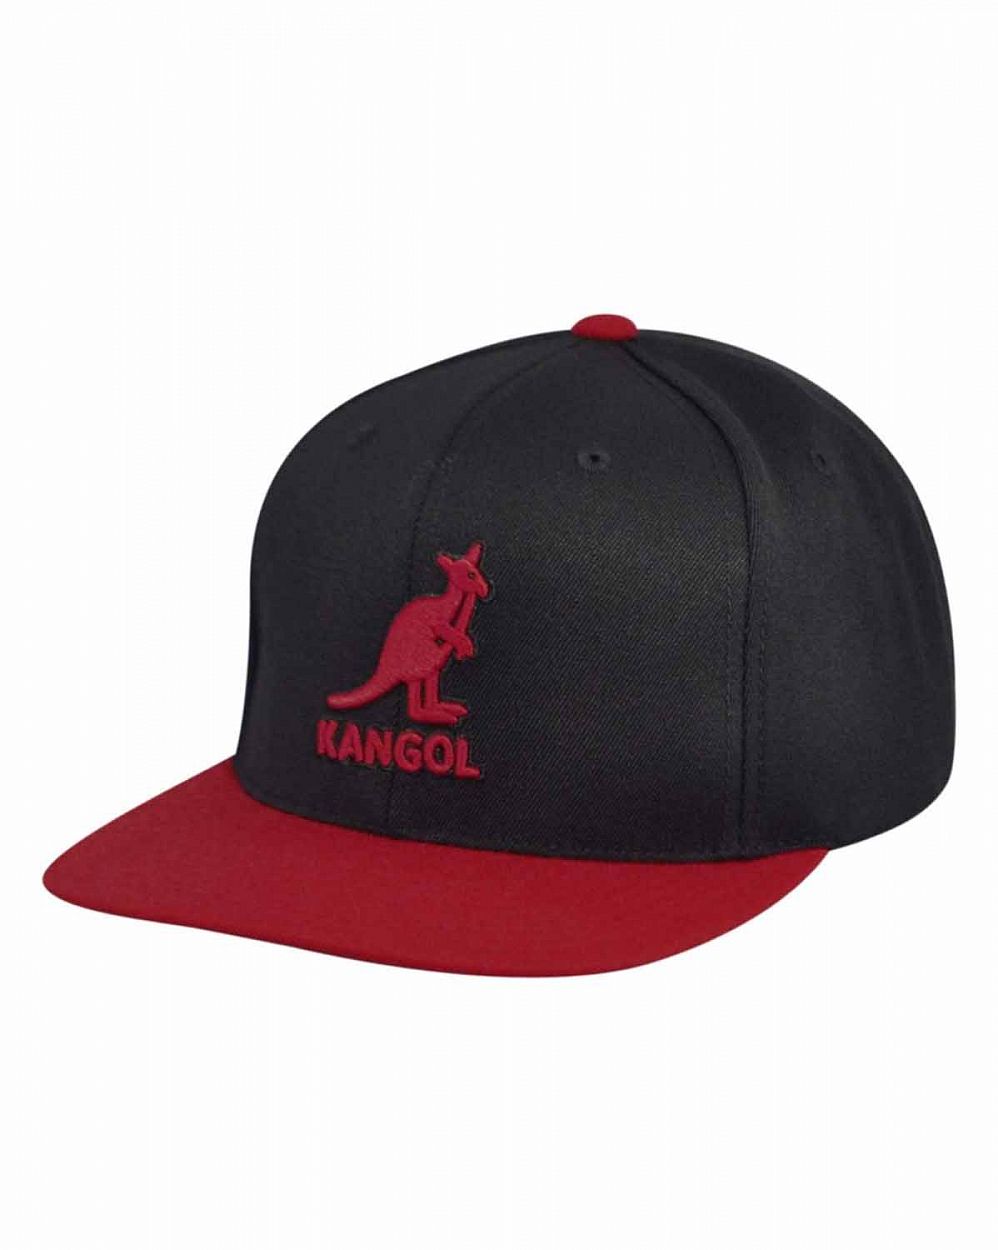 Бейсболка с прямым козырьком Kangol Championship Black Red отзывы